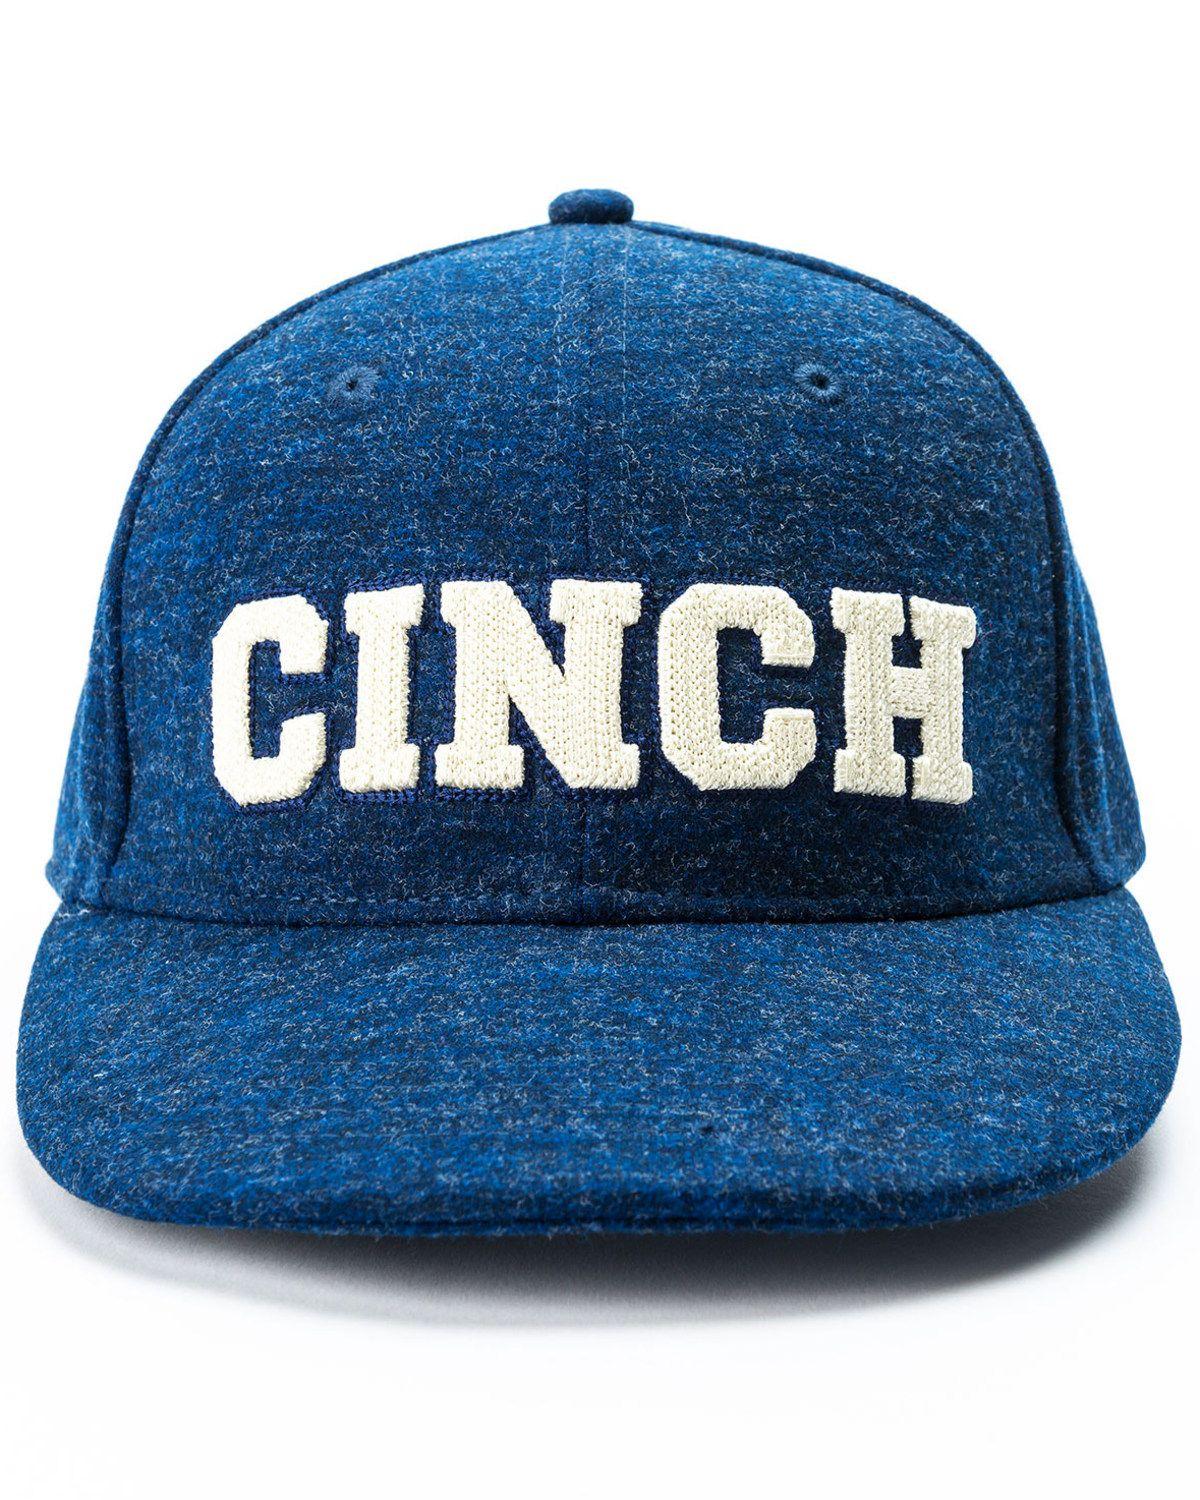 BootBarn Logo - Cinch Men's Logo Ball Cap